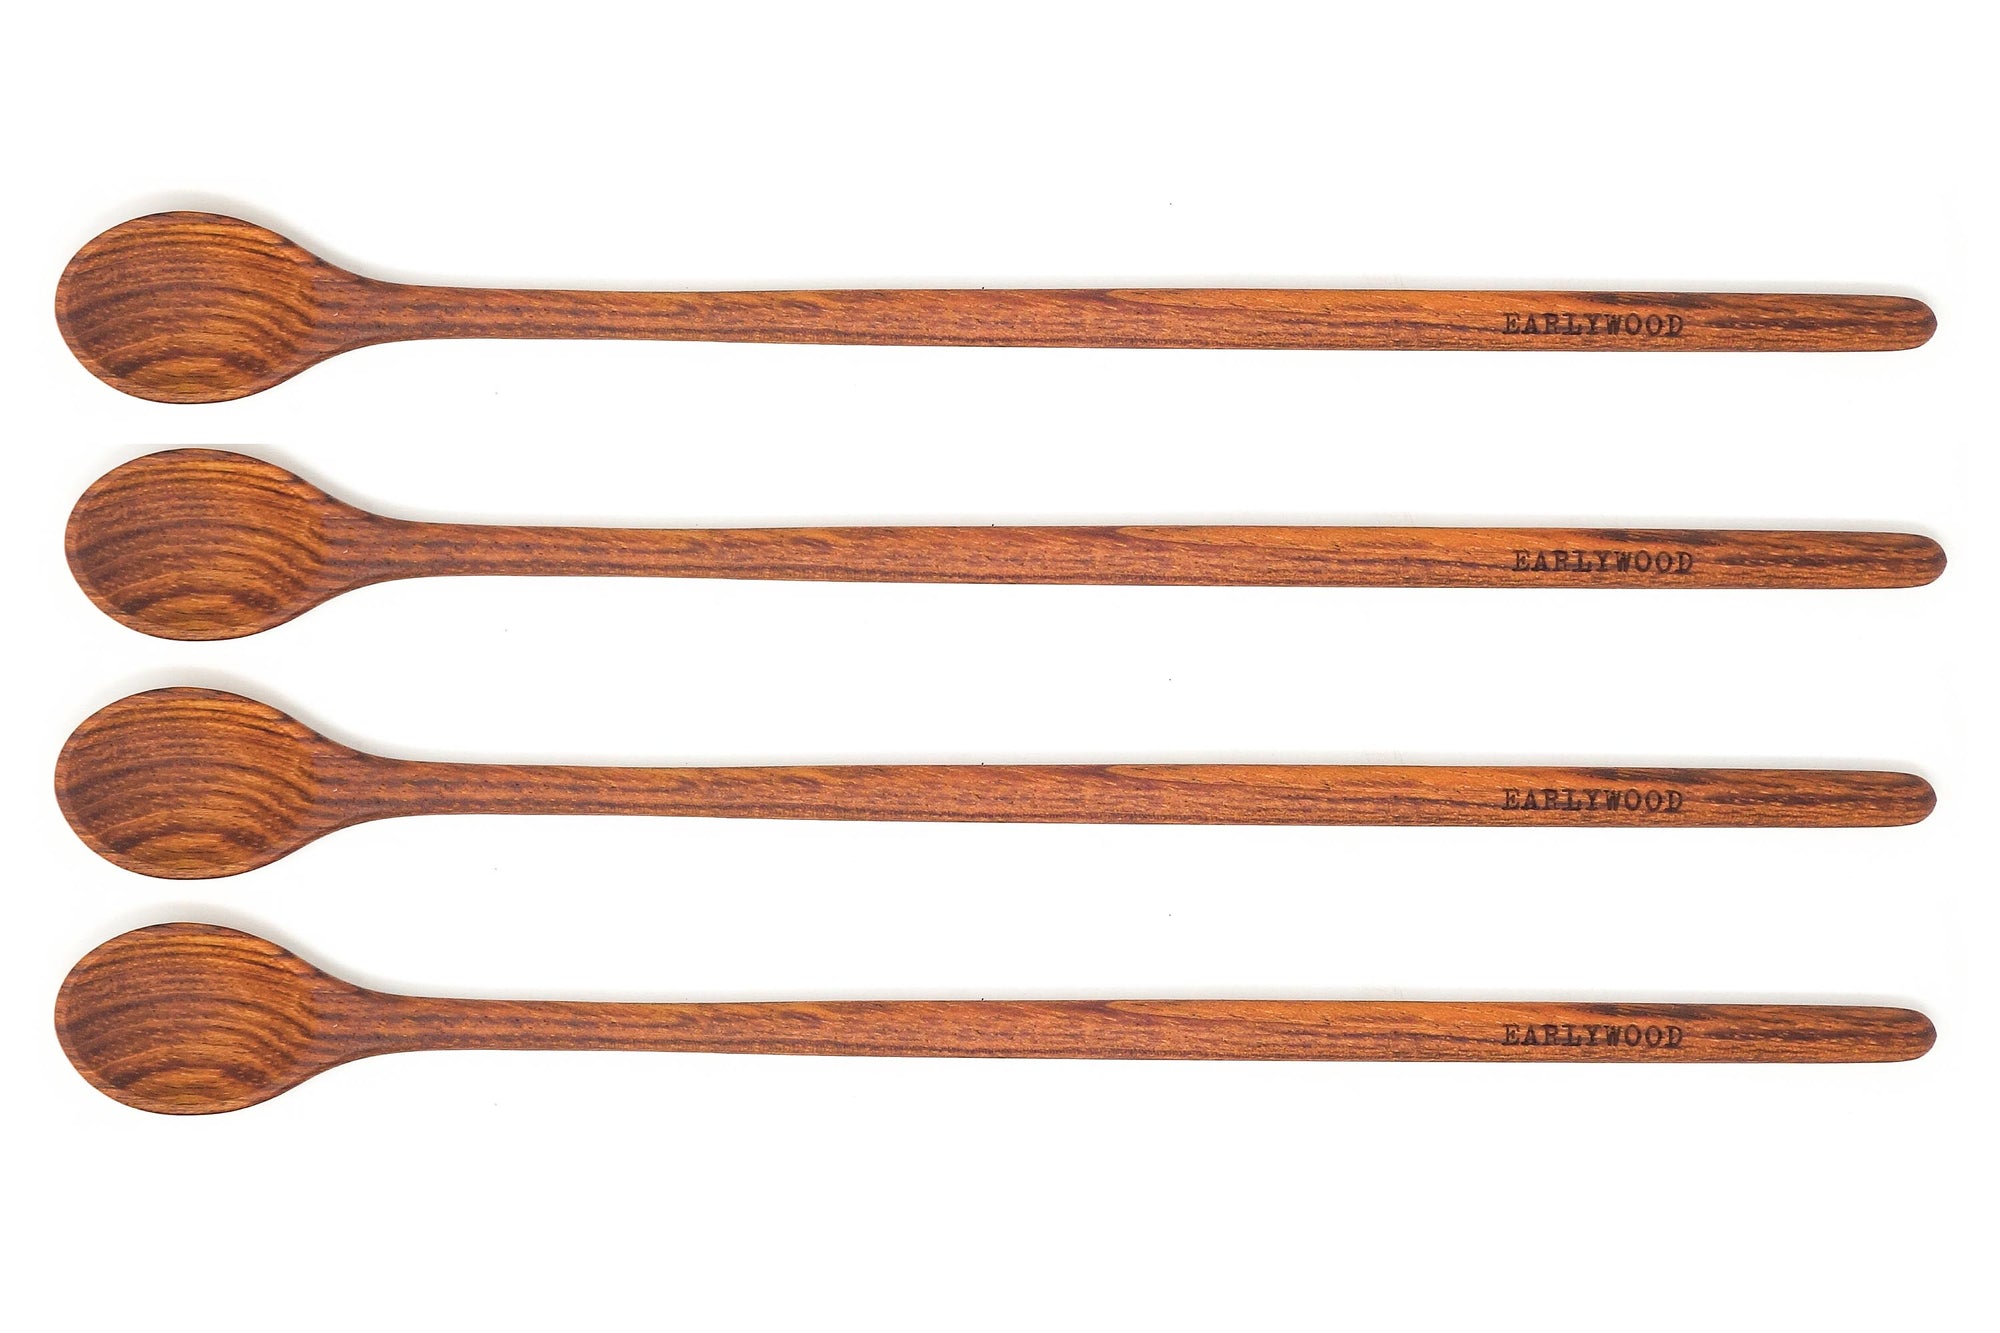 4-piece set of brown wood tasting spoons - jatoba Earlywood